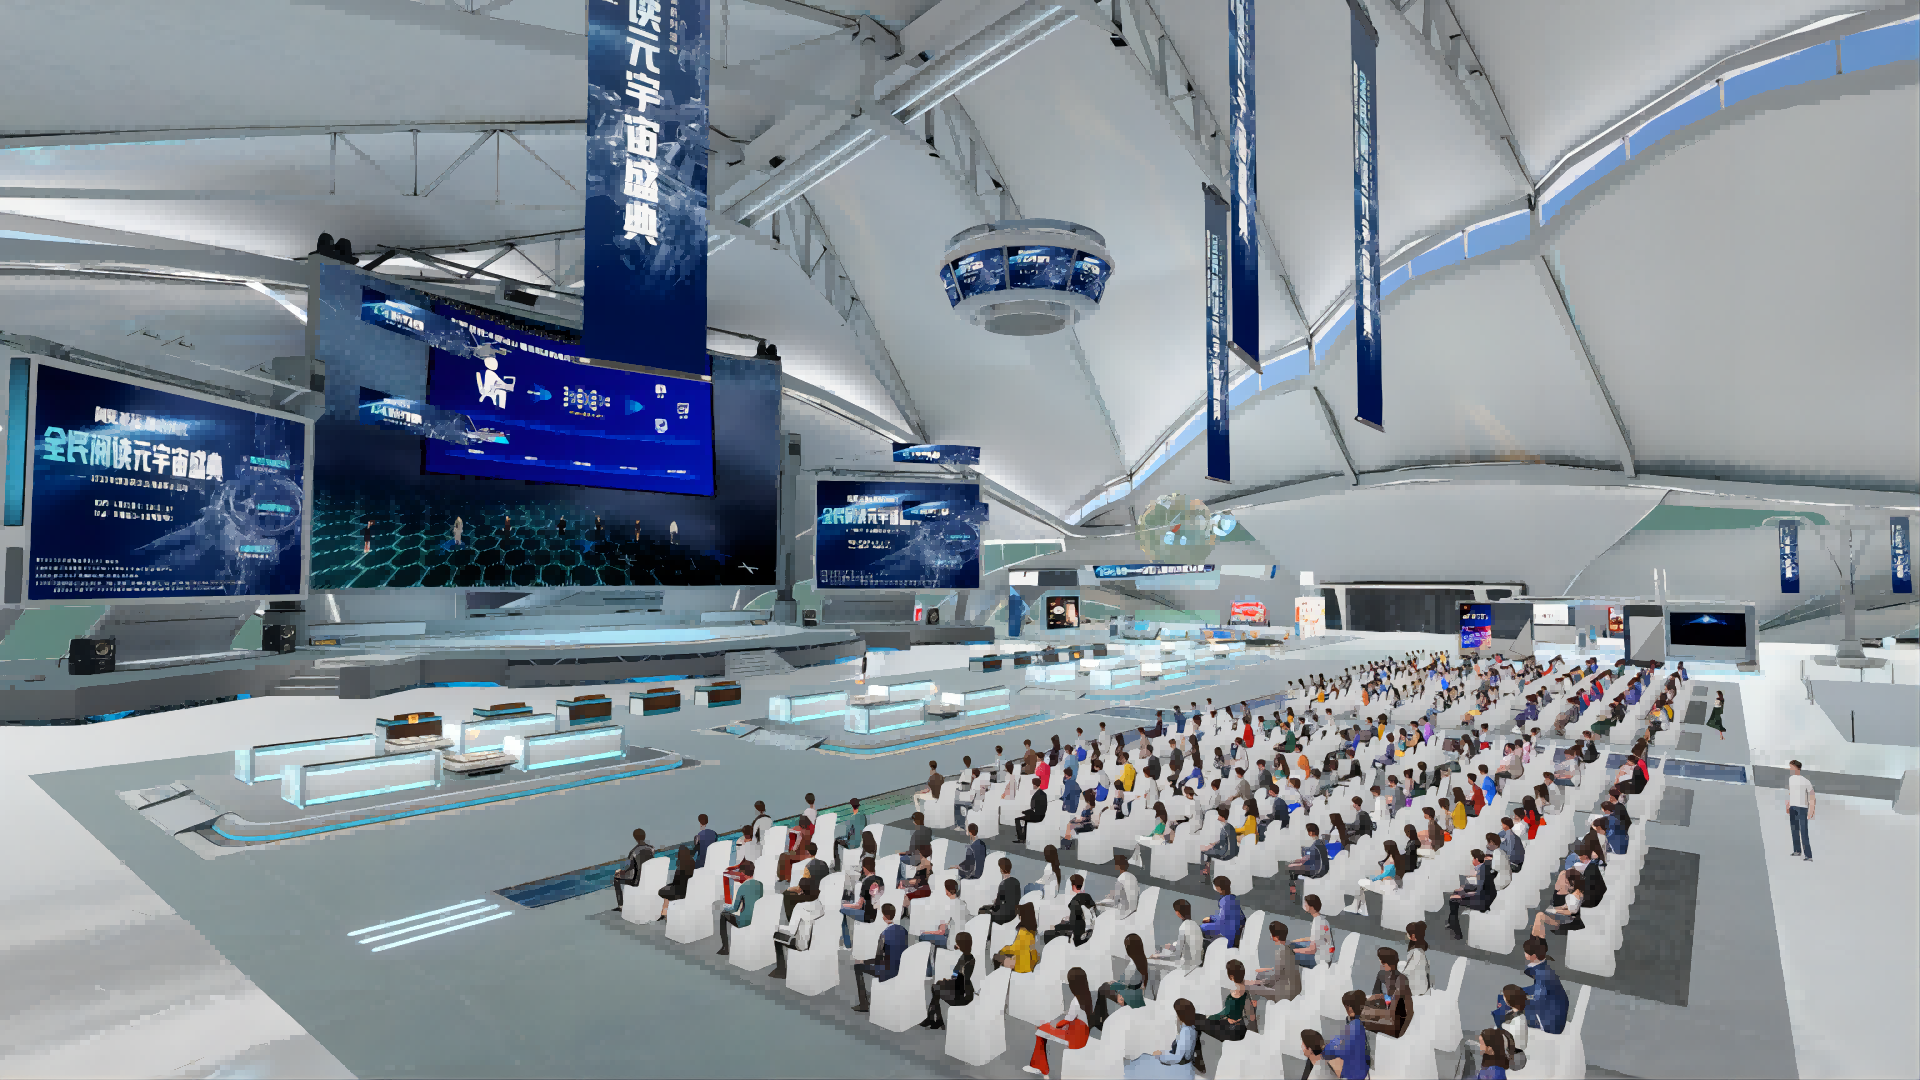 图片展示了一个现代化的室内场所，人群坐在座位上，前方有演讲台和大屏幕，环境科技感强烈。